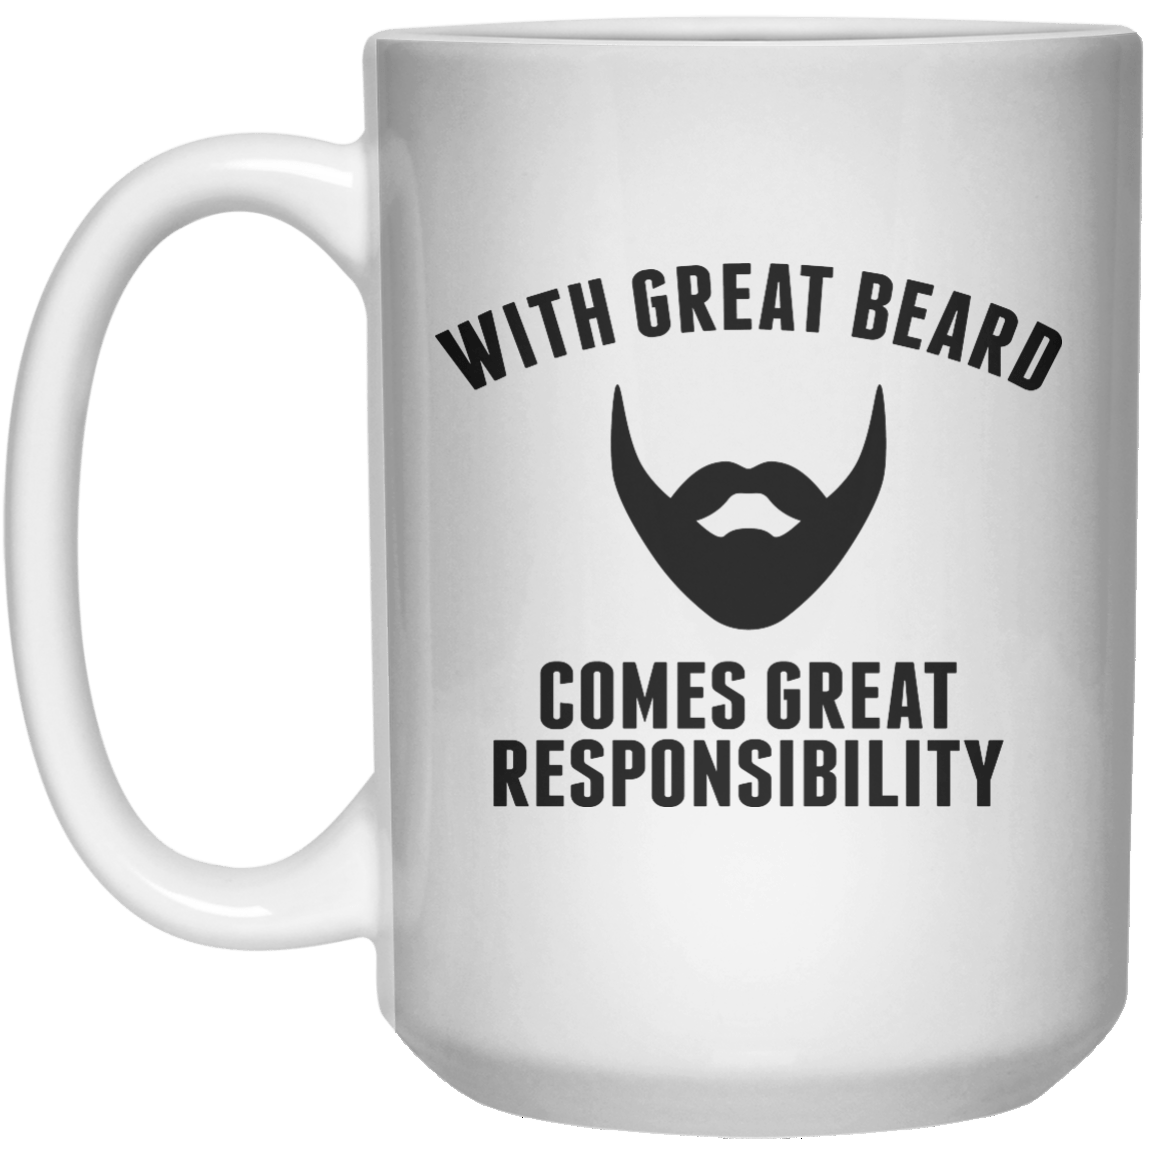 With great beard comes great responsibility MUG  Mug - 15oz 